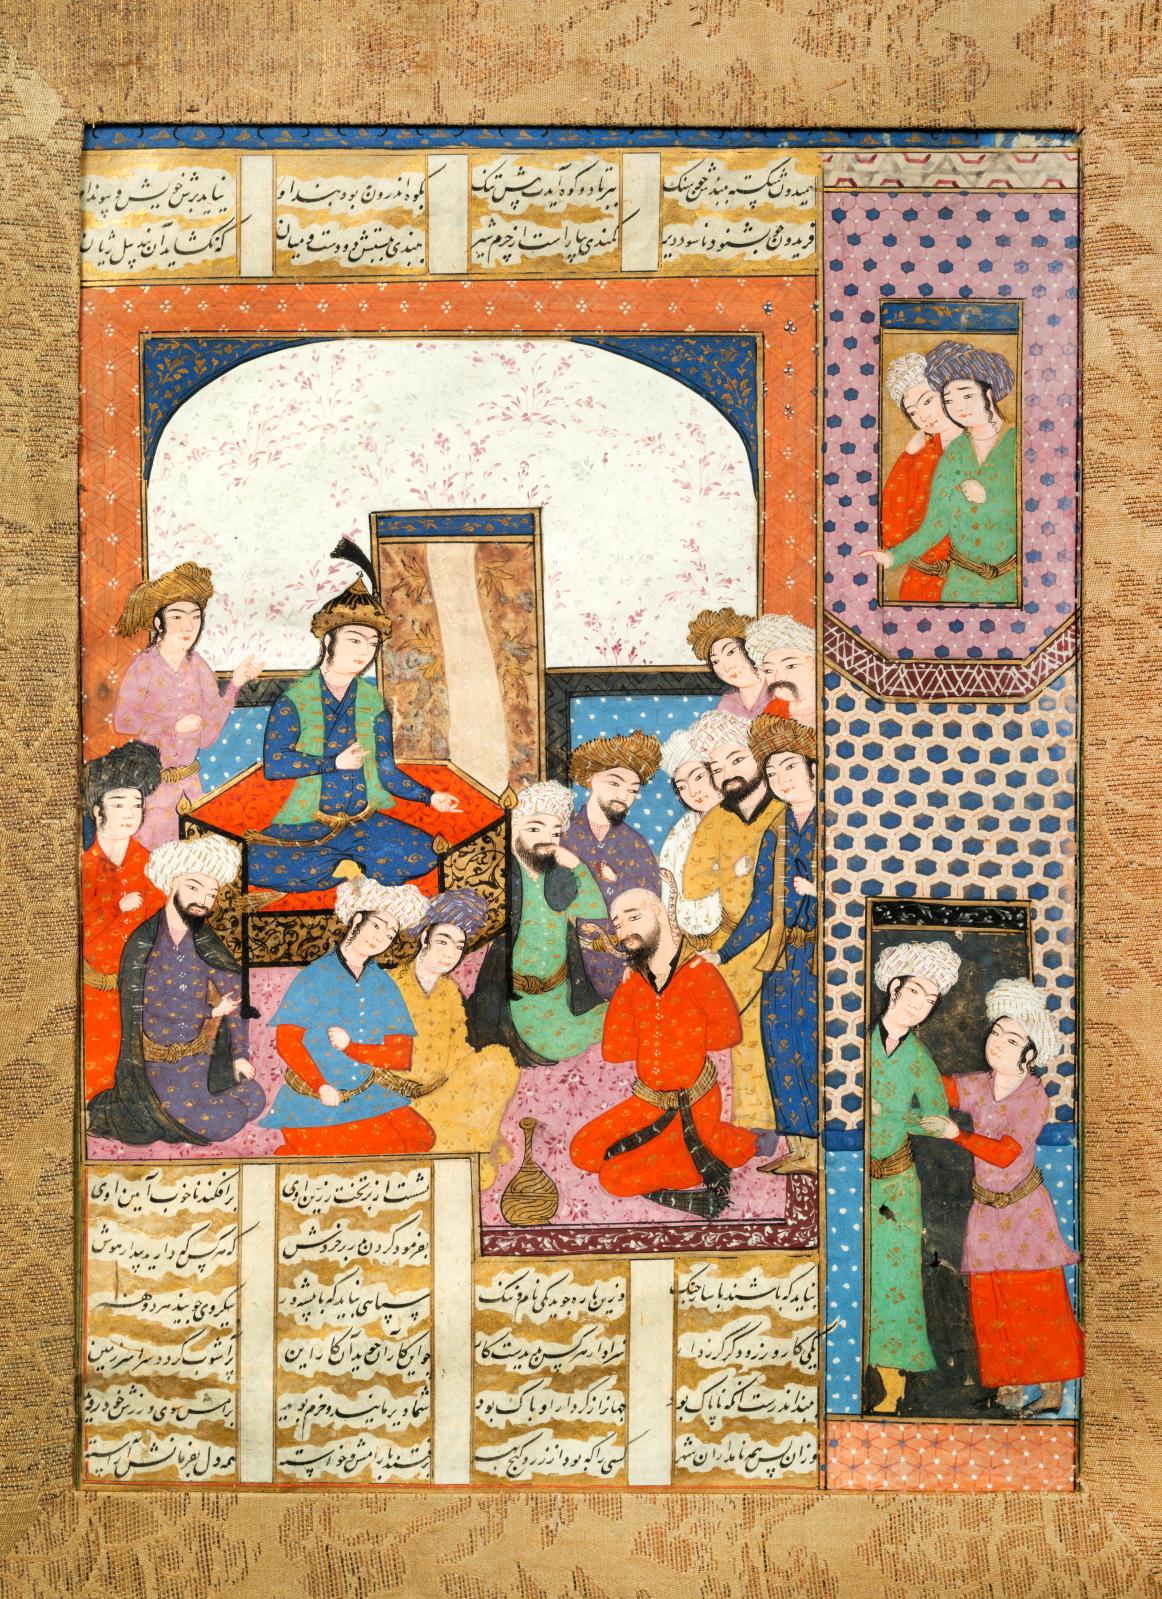 Iran, Chiraz ou Qazvin, vers 1600, dynastie safavide. Zahhak prisonnier amené devant Faridun, page d’un Shâhnâmeh, encre, pigments polychromes et or s